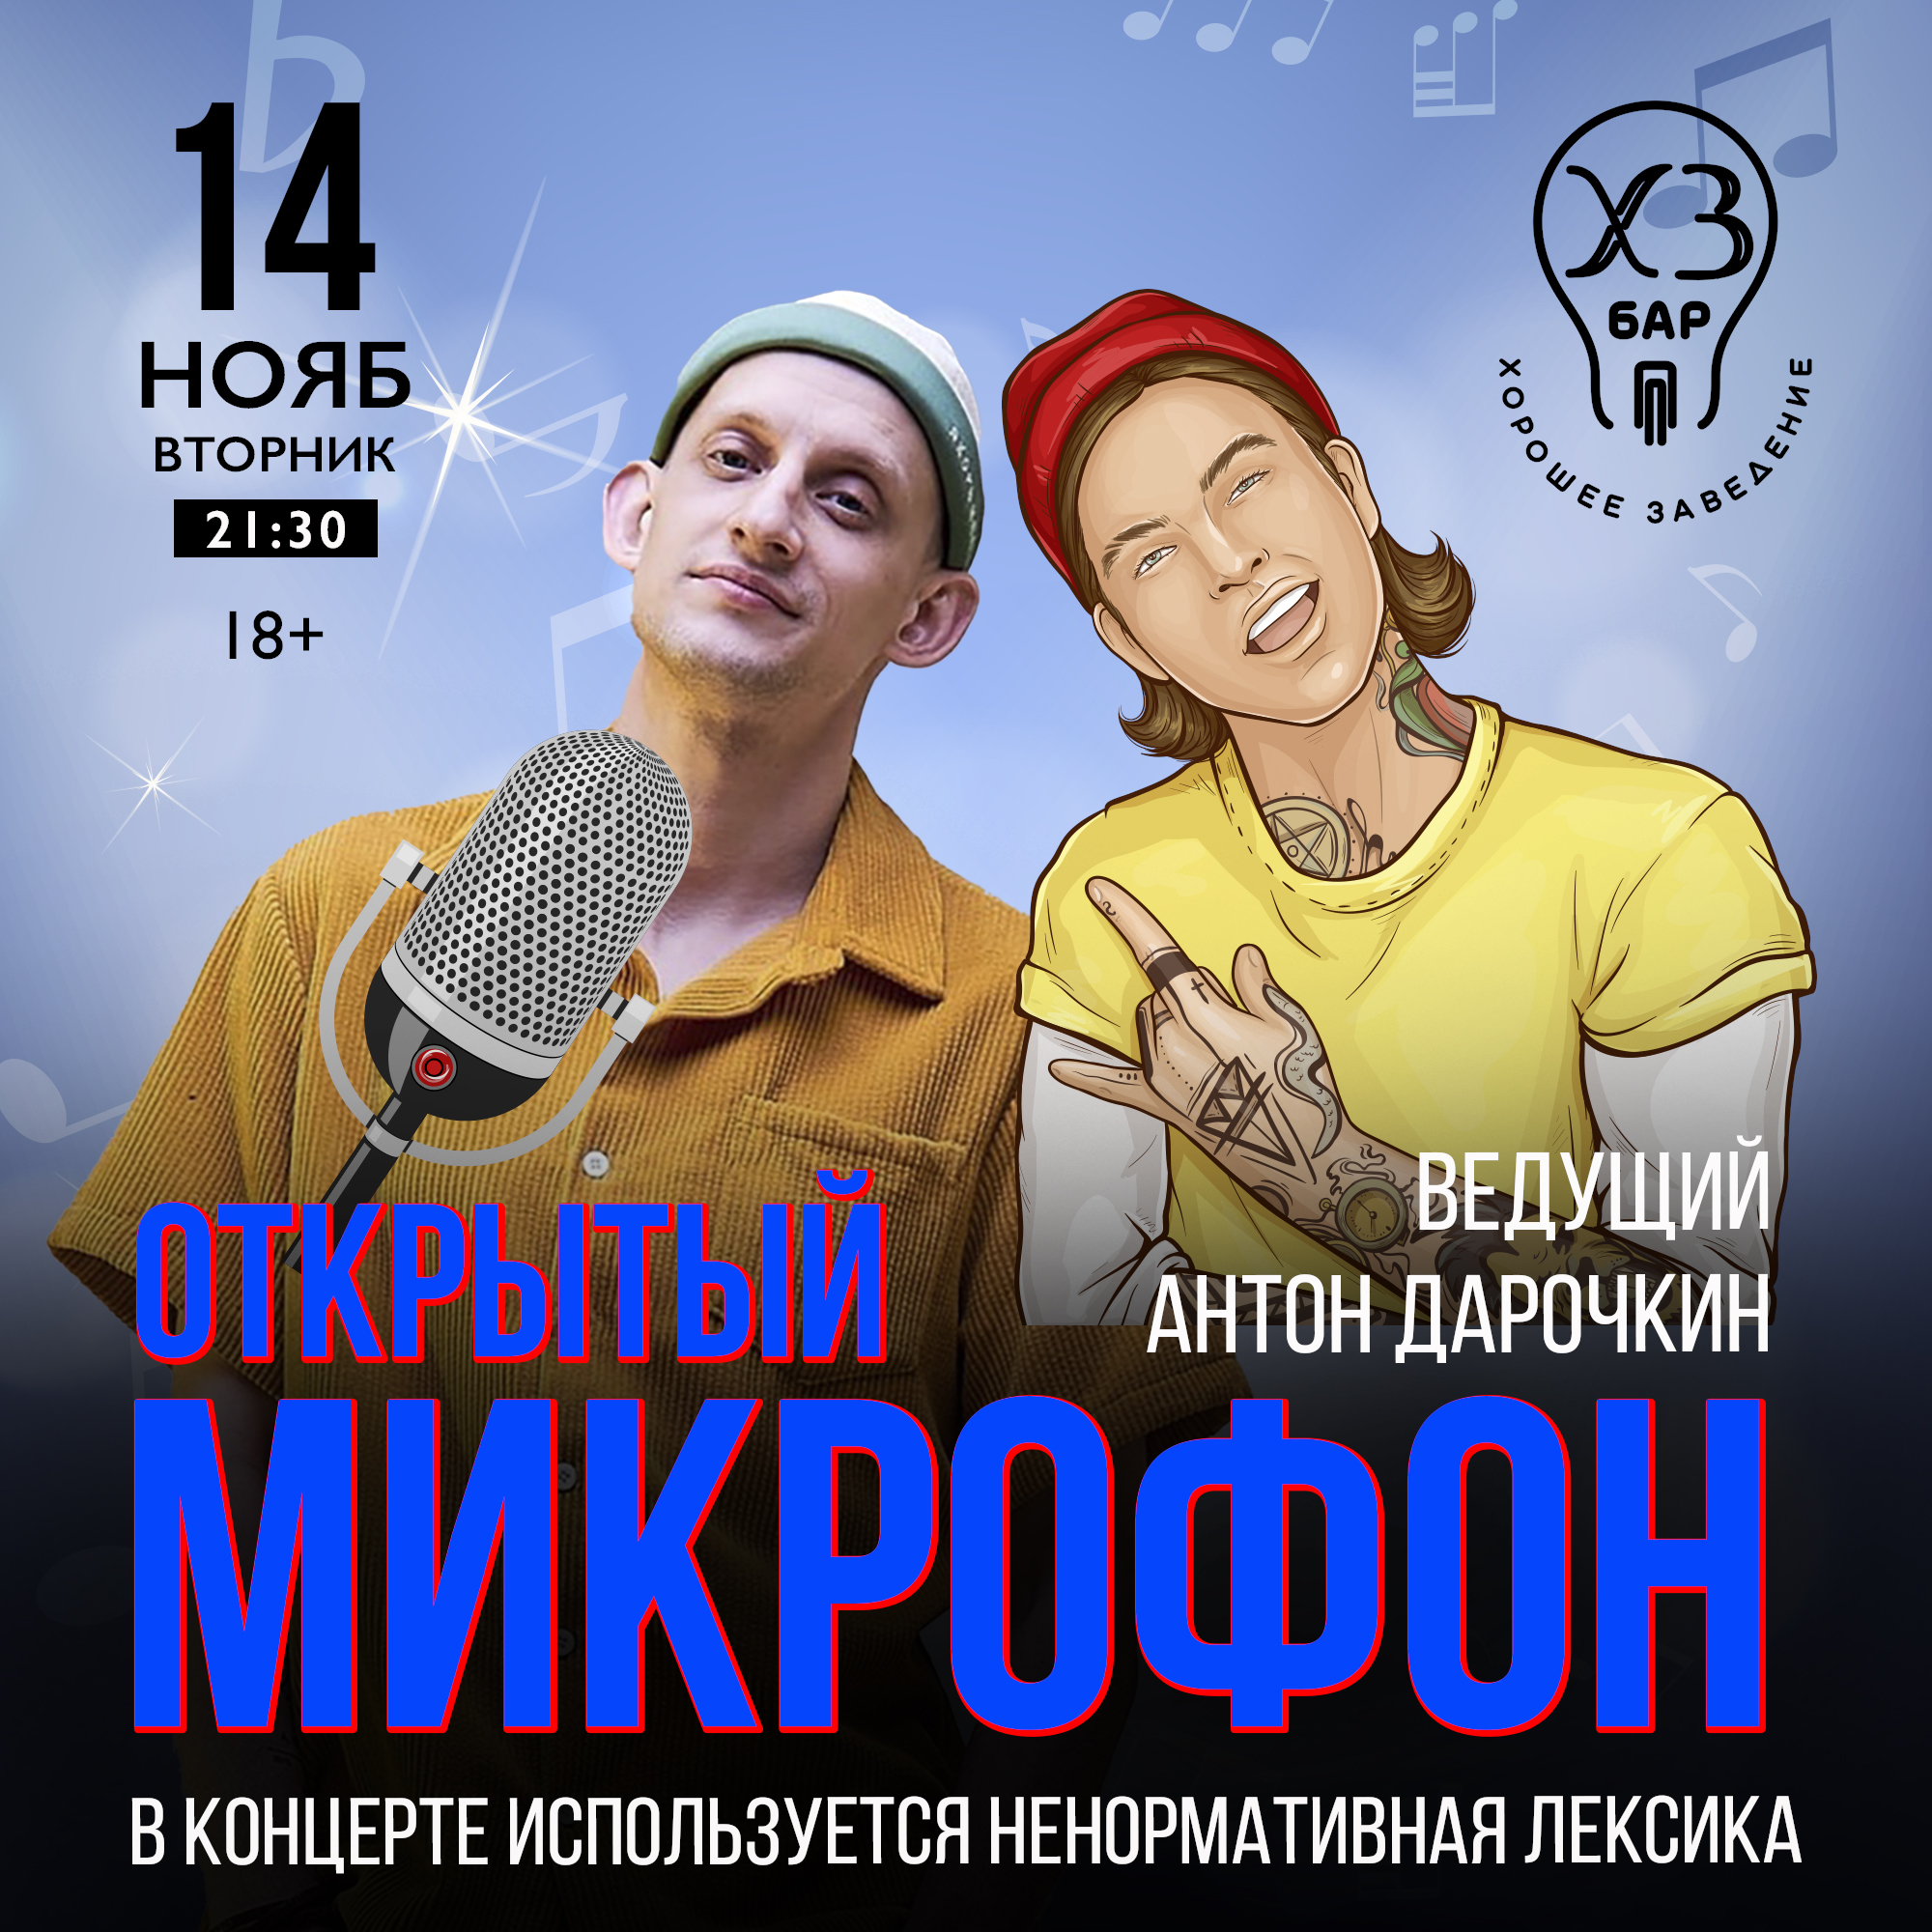 ОТКРЫТЫЙ МИКРОФОН Ведущий Антон Дарочкин